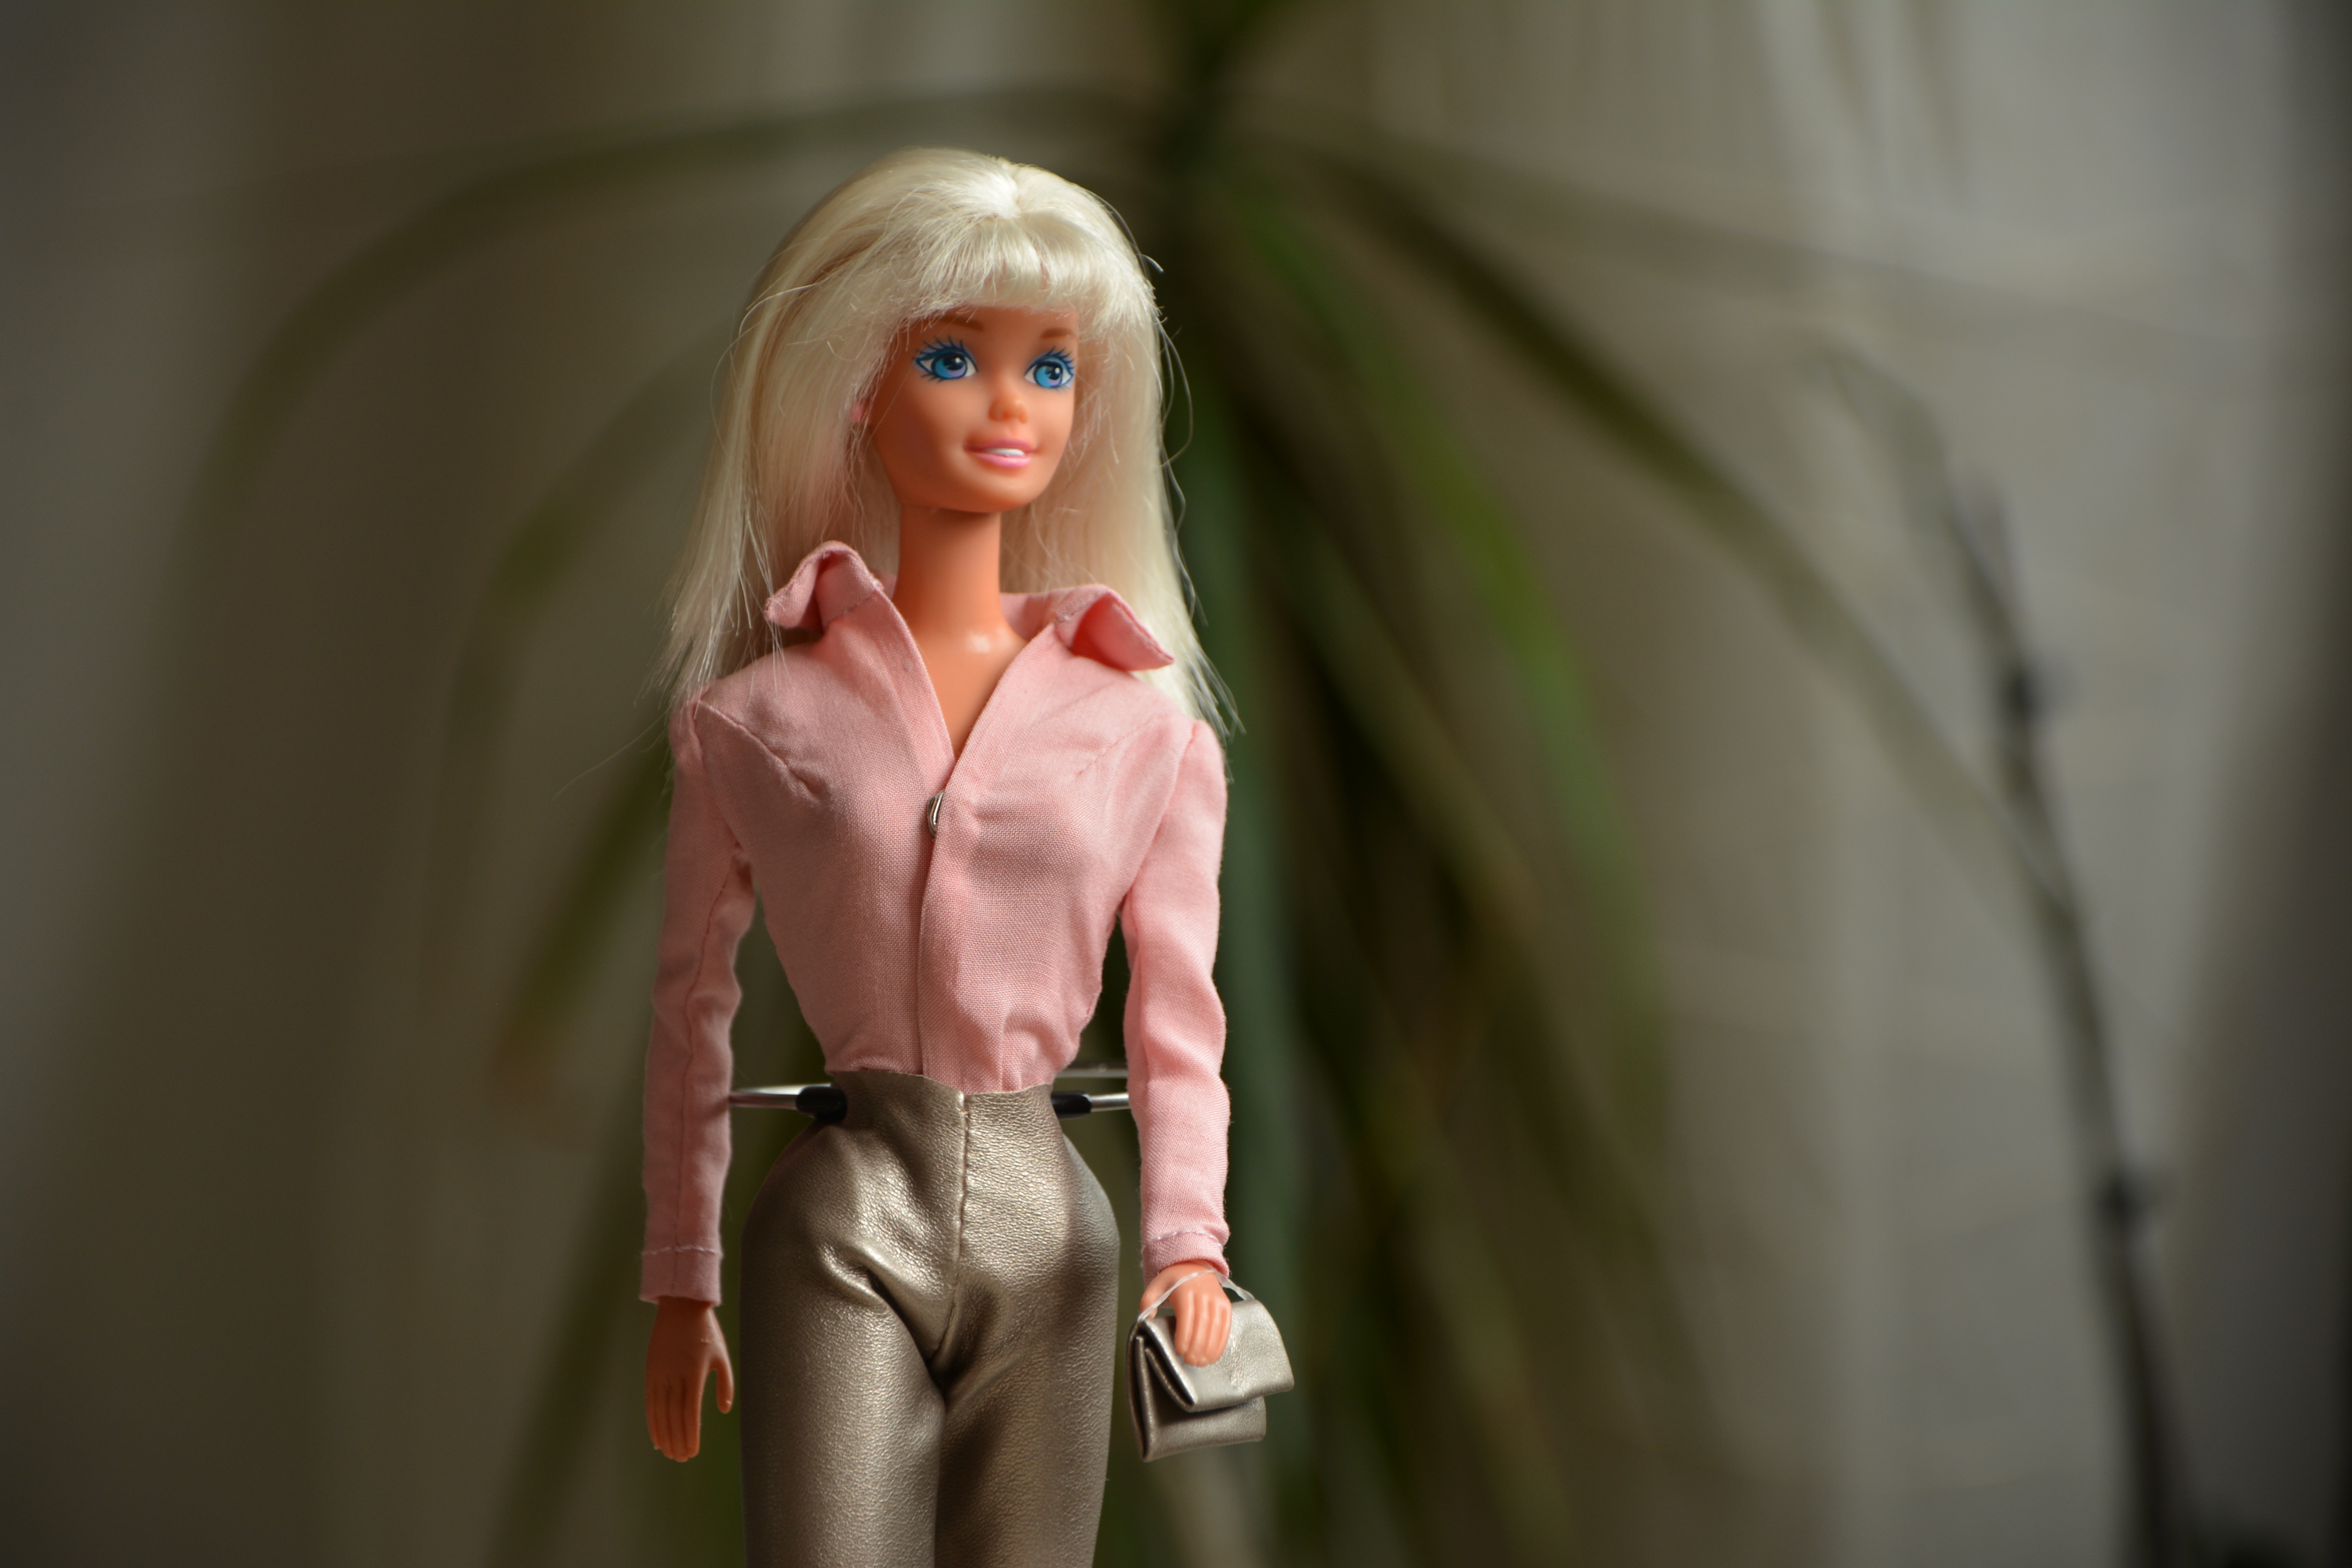 Voitures télécommandées Barbie : notre top 5 - Le Parisien